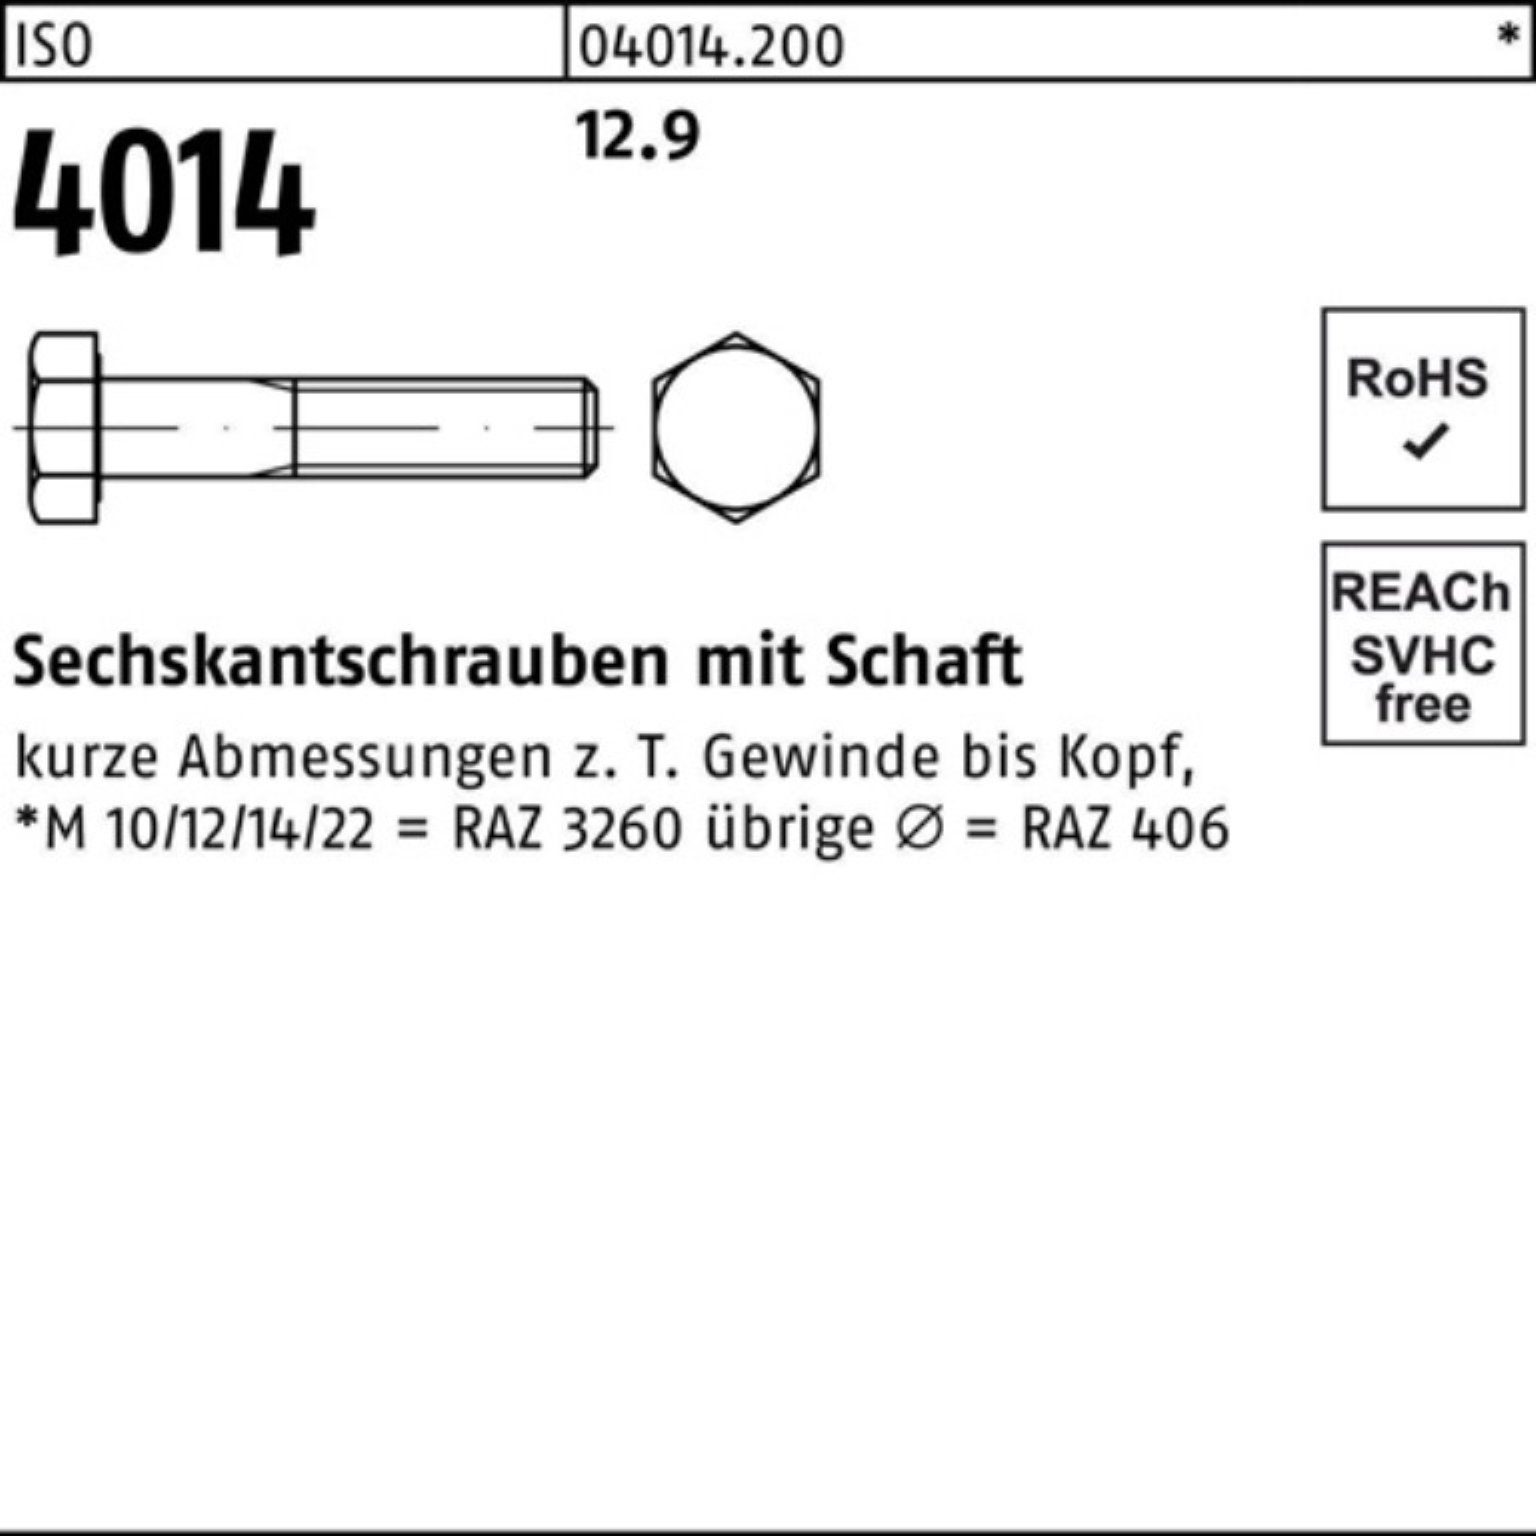 Bufab Sechskantschraube 100er 12.9 ISO Stück 50 IS Pack Sechskantschraube M12x Schaft 4014 65